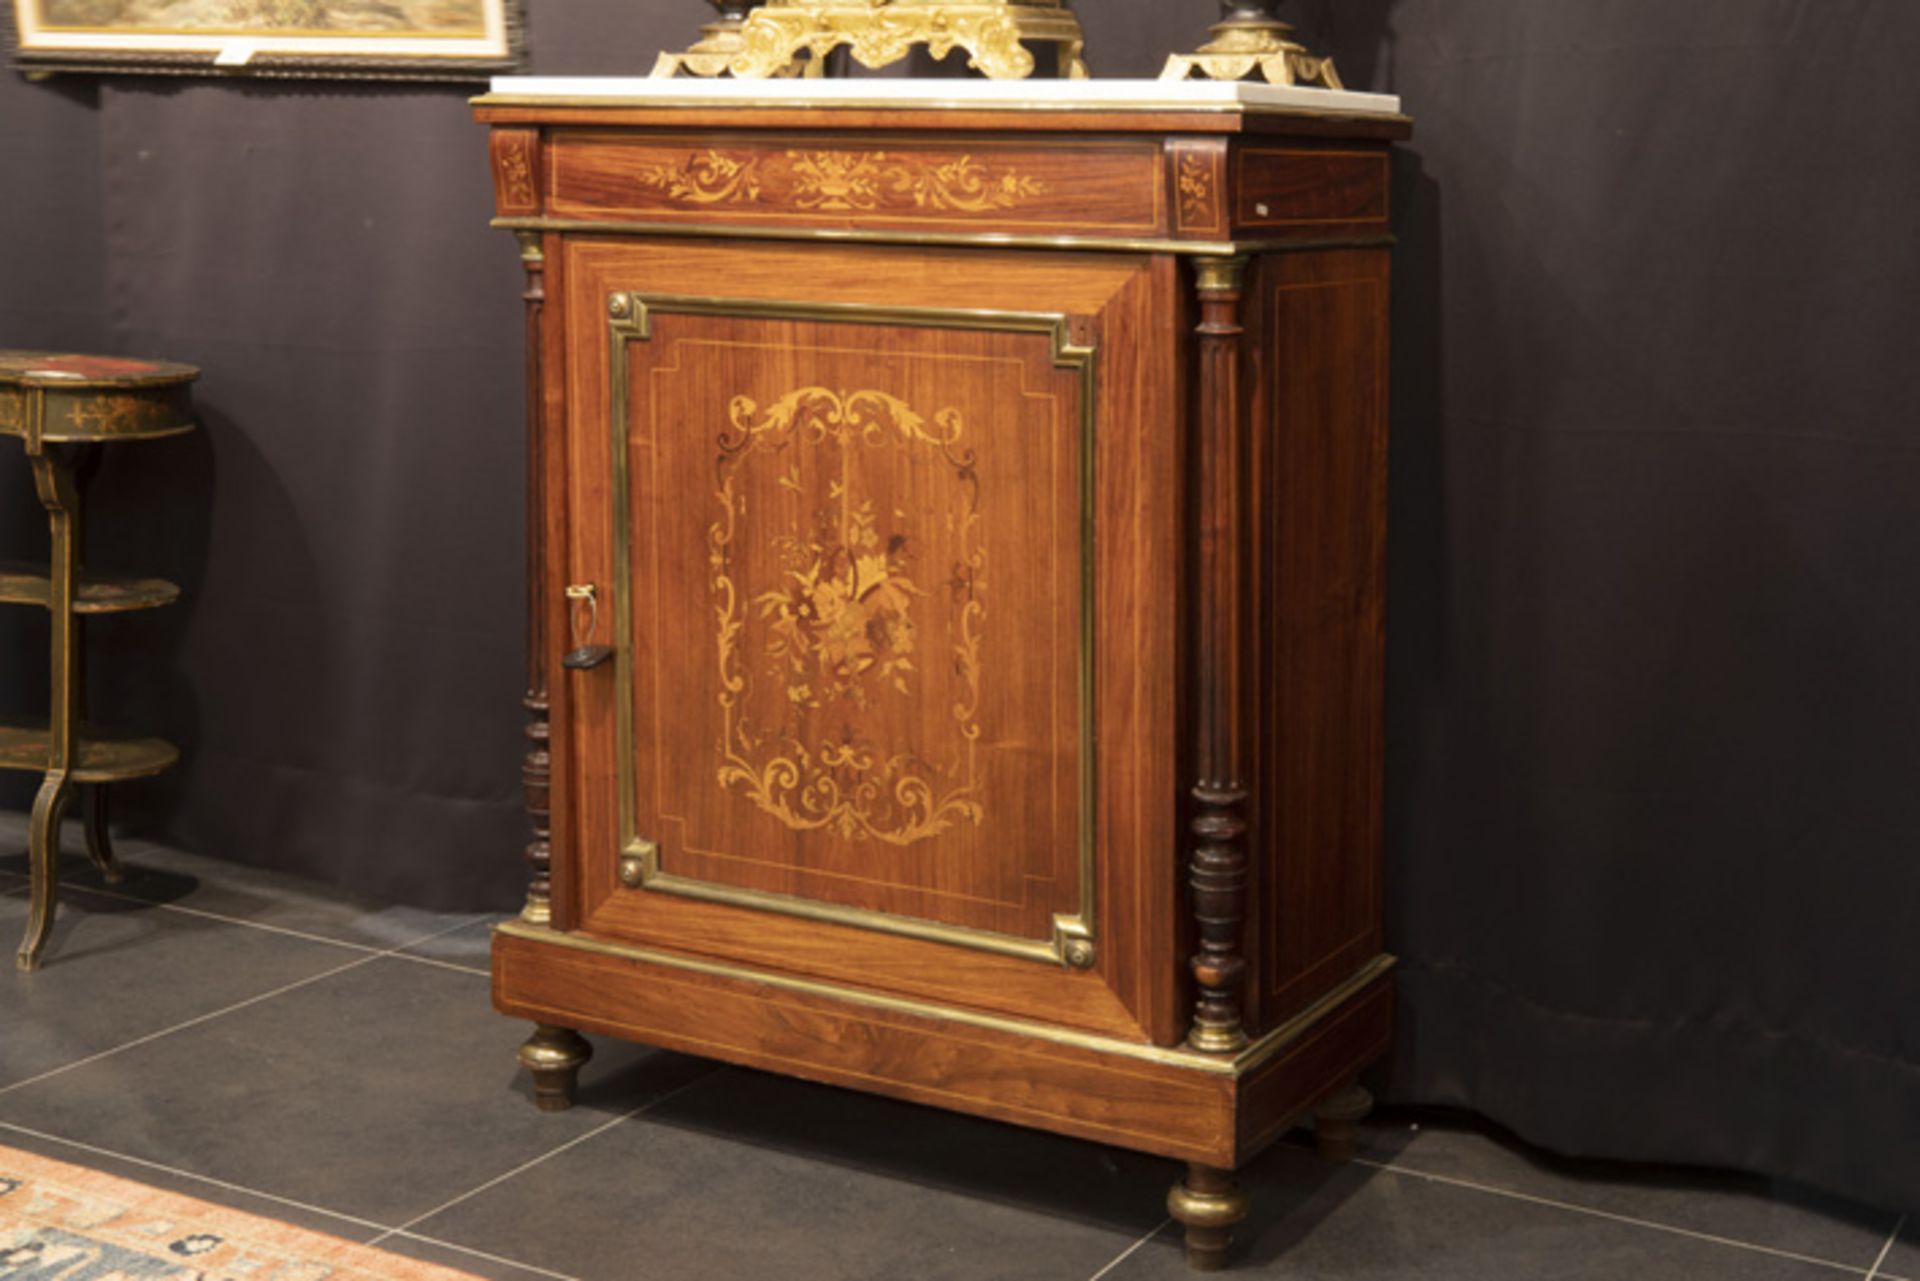 FRANKRIJK - 19° EEUW neoclassicistisch meubel in marqueterie versierd met koper- en bronsbeslag en - Image 2 of 3